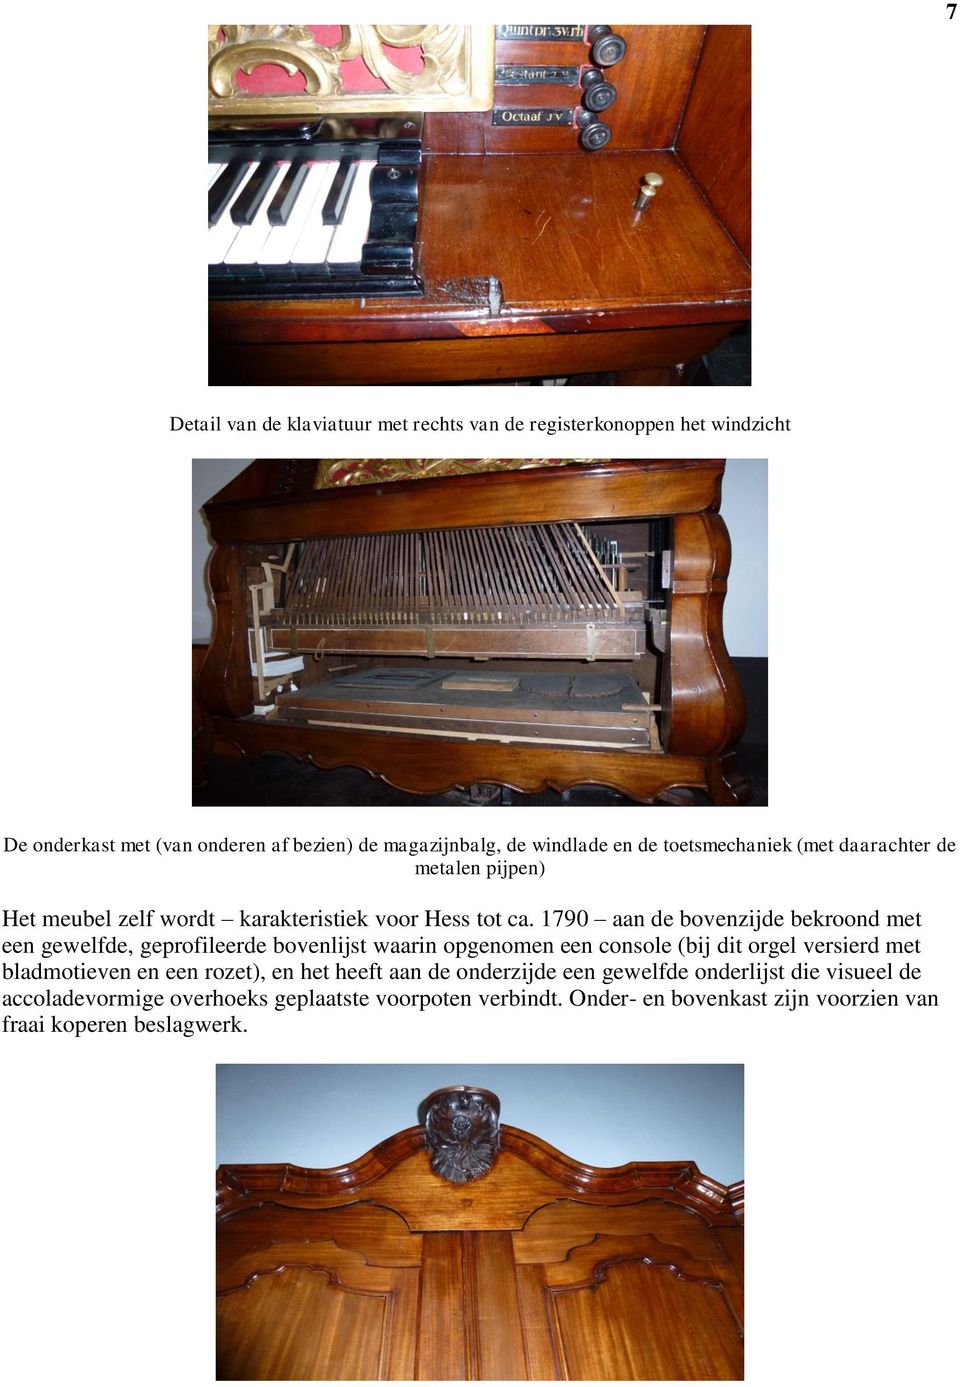 1790 aan de bovenzijde bekroond met een gewelfde, geprofileerde bovenlijst waarin opgenomen een console (bij dit orgel versierd met bladmotieven en een